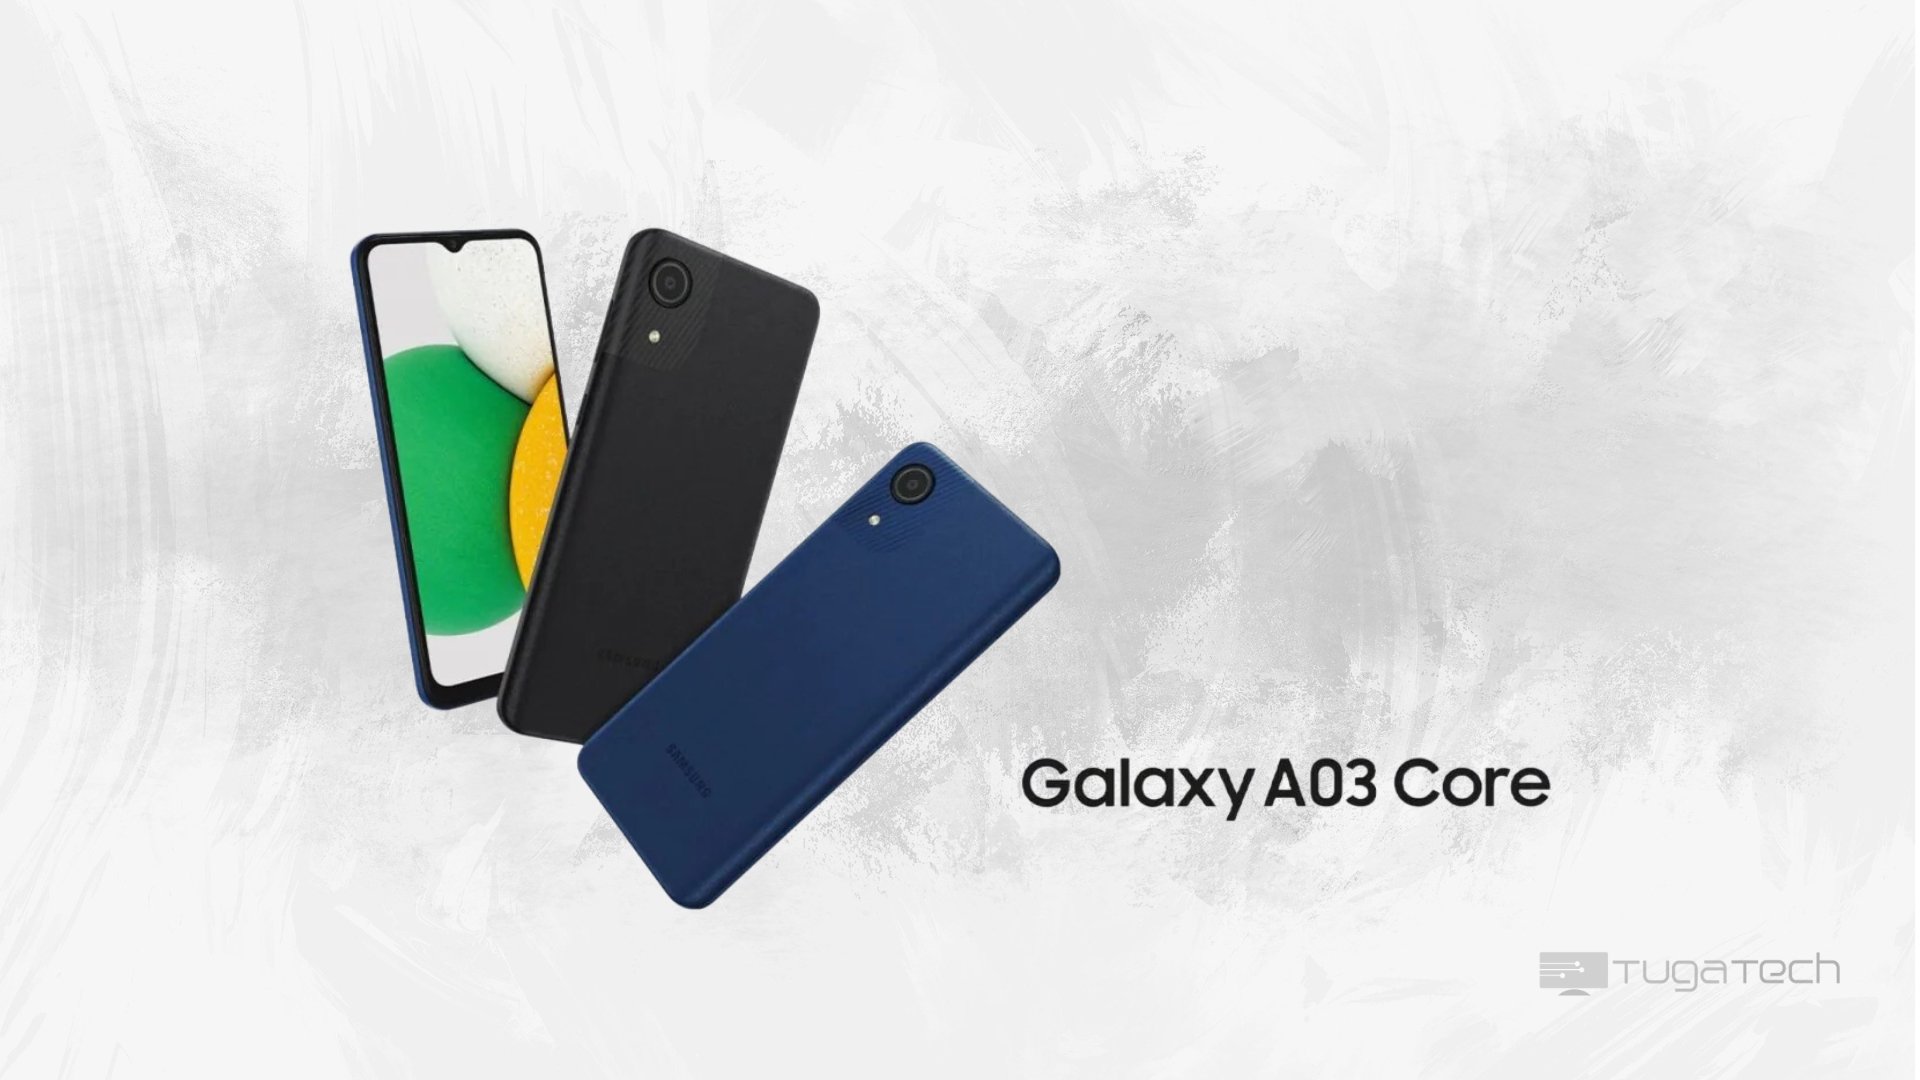 Samsung Galaxy A03 Core continua a receber atualizações além do esperado